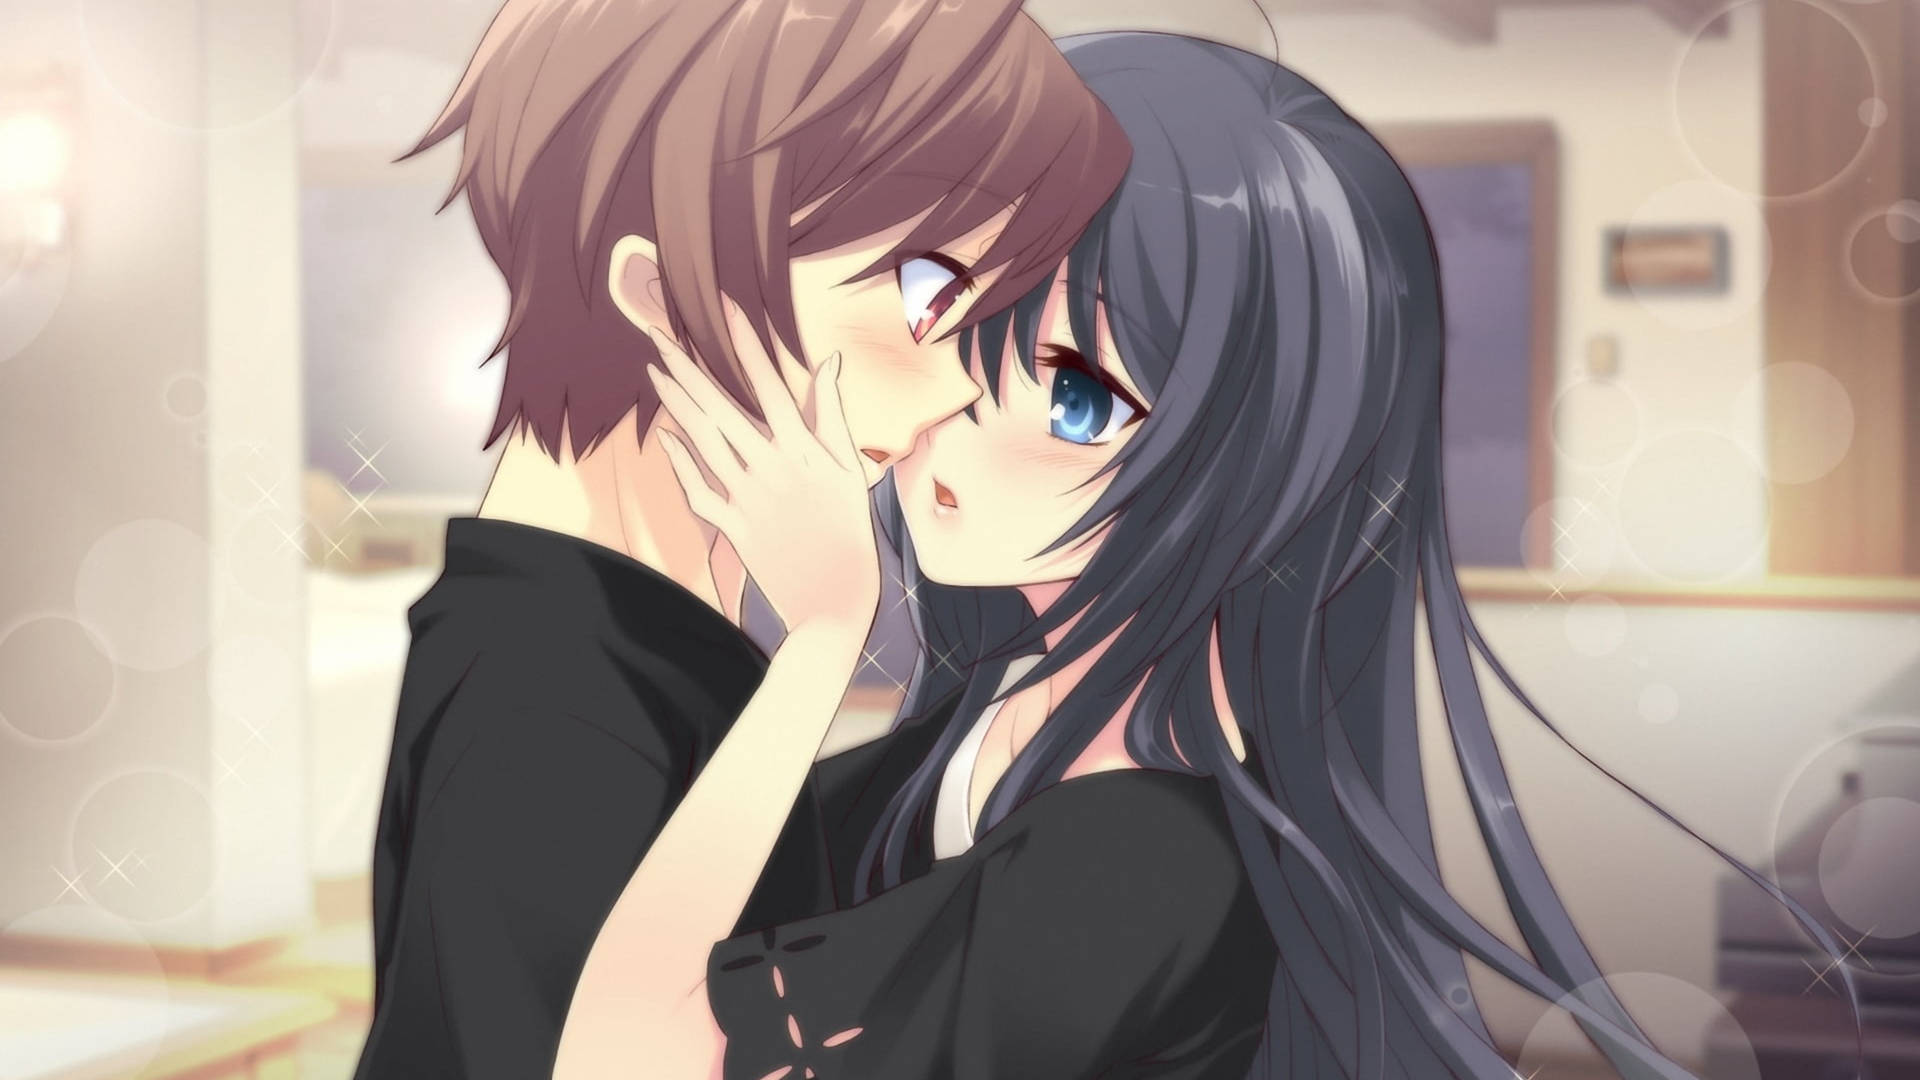 Blushing Cute Anime Couple Background